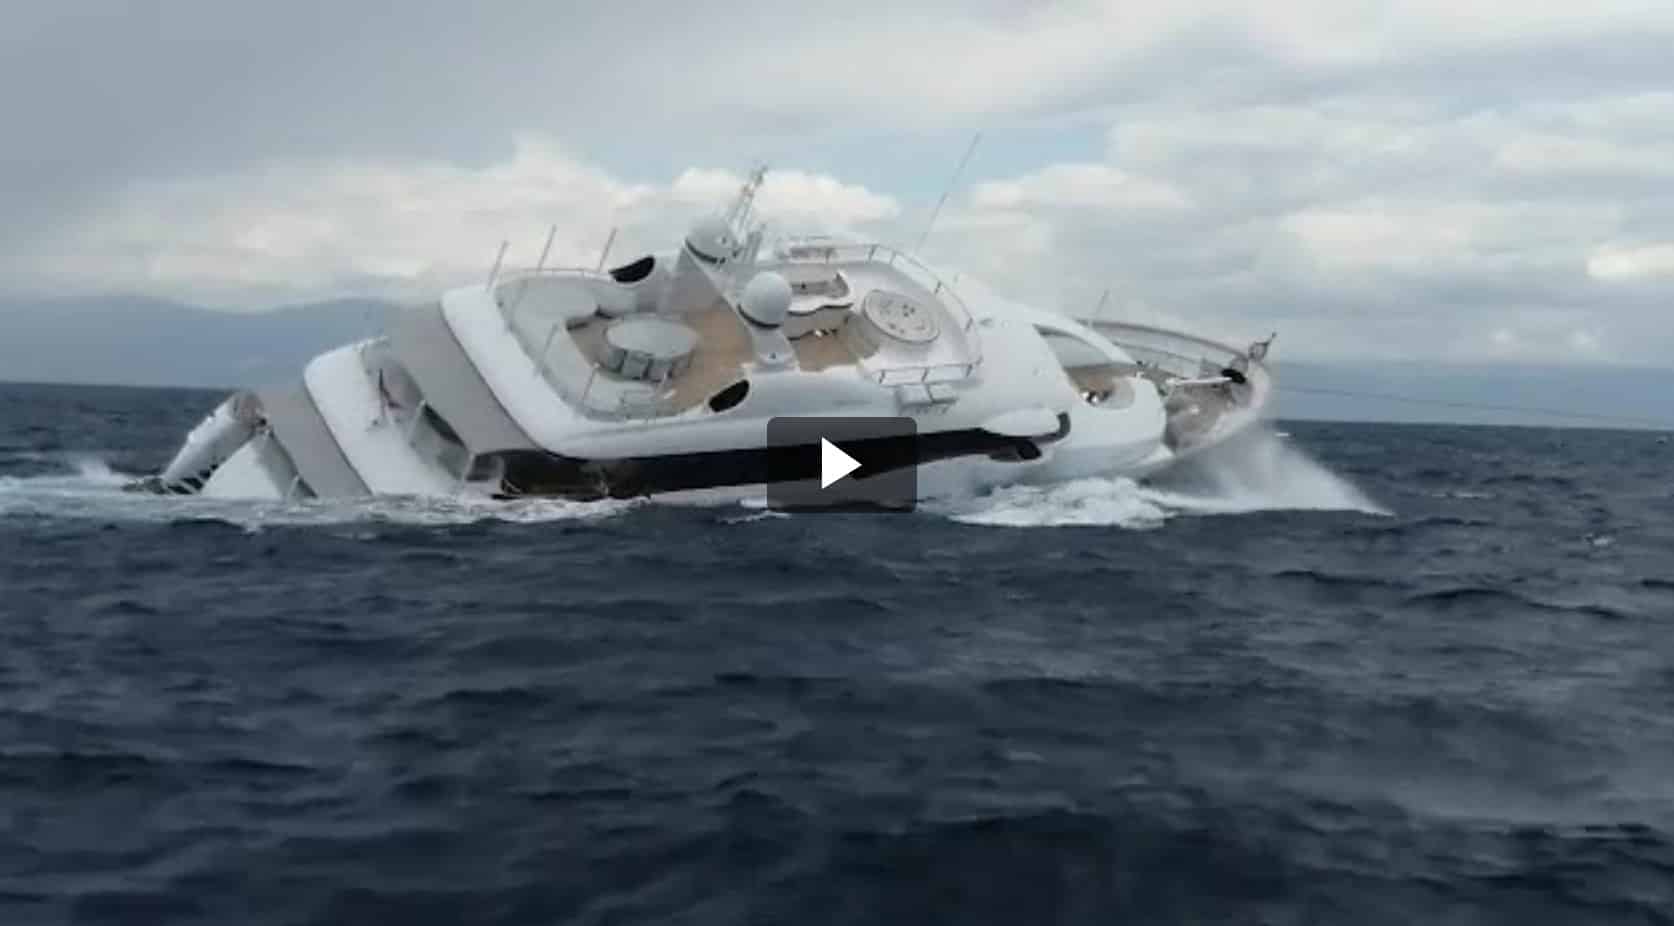 superyacht sinking off italian coast